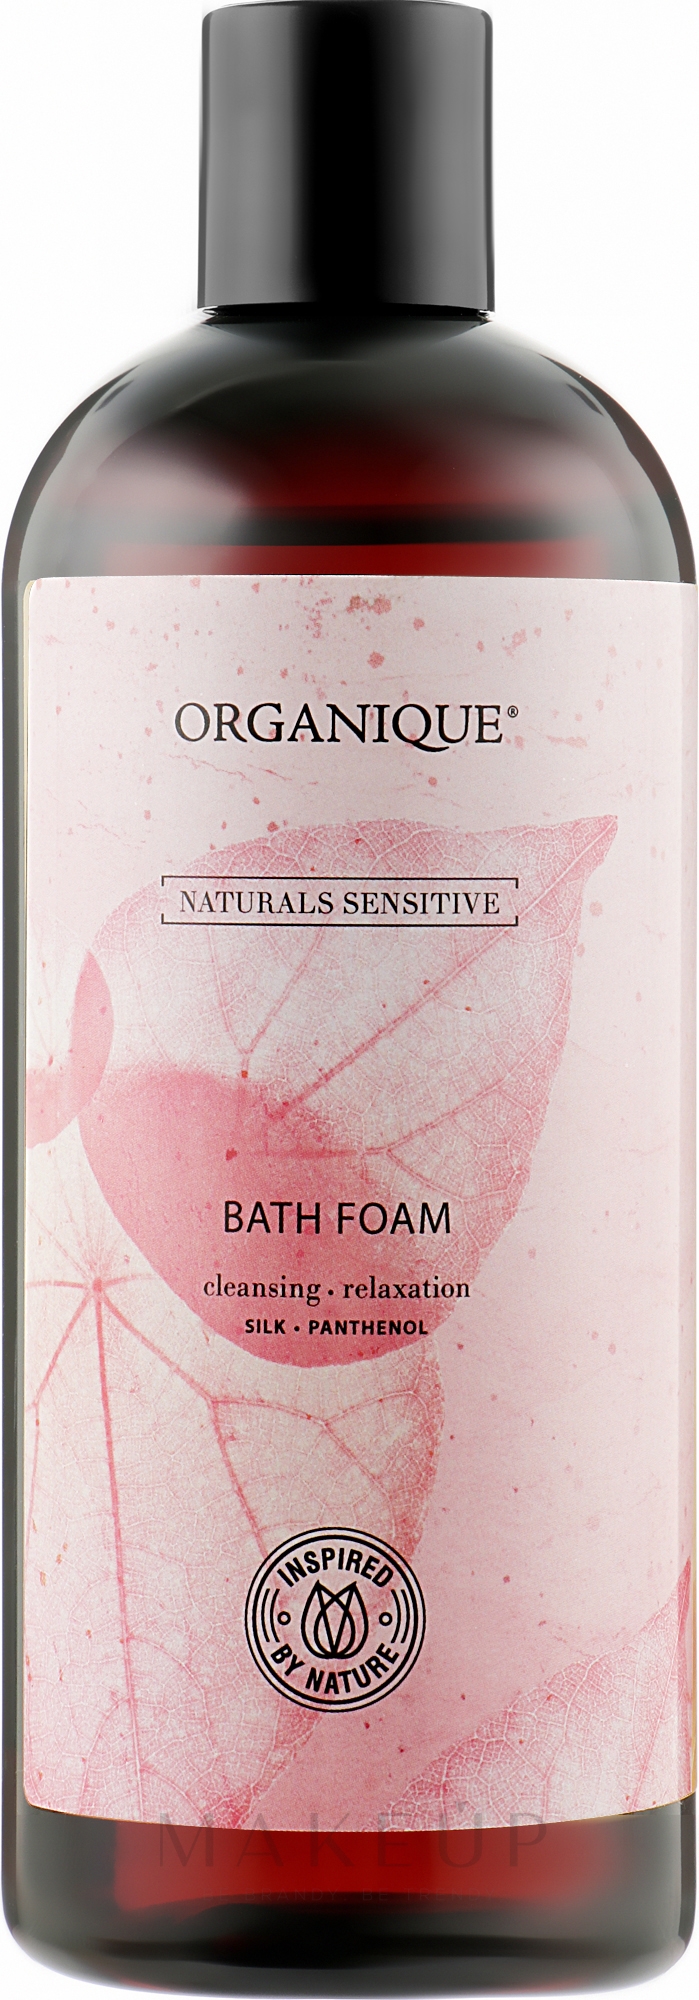 Badeschaum für empfindliche Haut mit hydrolysierter Seide, Panthenol und Vitamin E - Organique Naturals Sensitive Bath Foam — Bild 400 ml